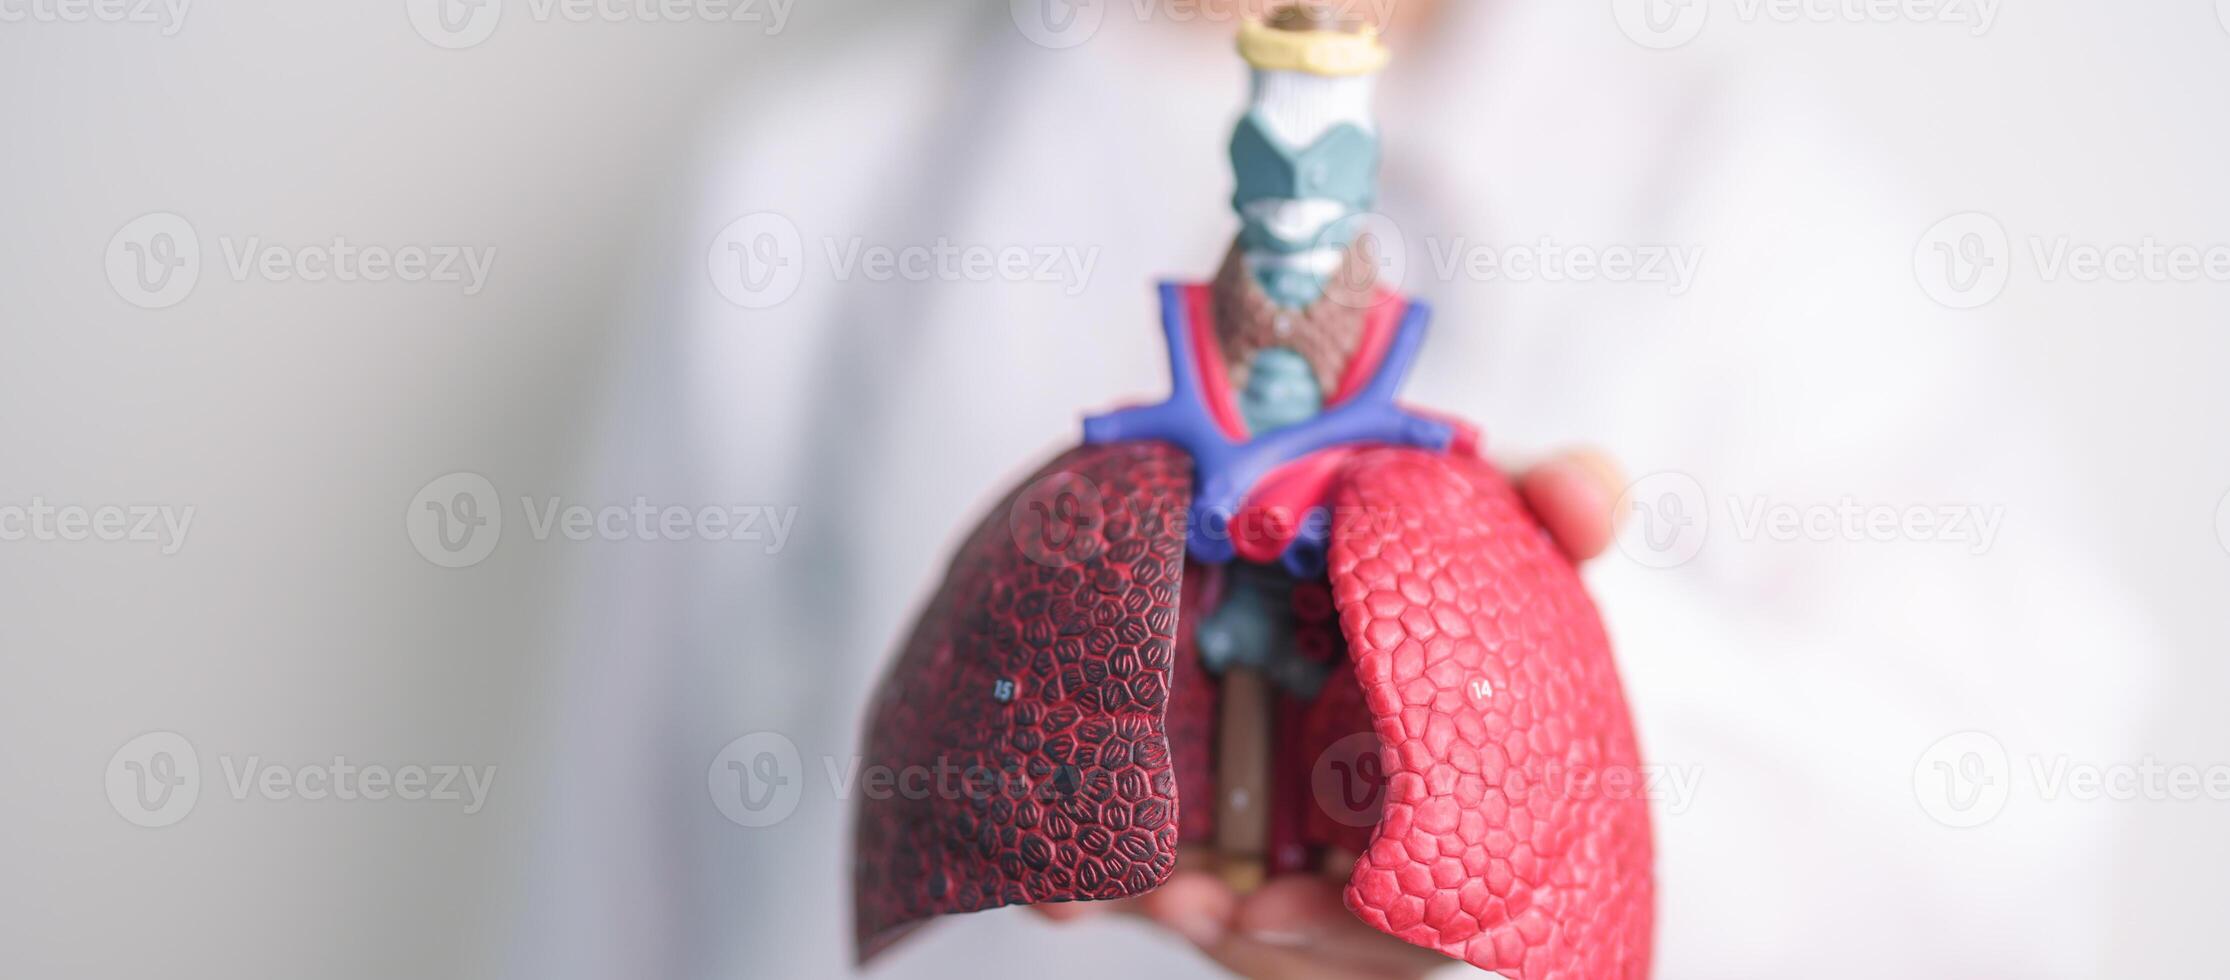 läkare med rökare och vanligt lunga anatomi för sjukdom. lunga cancer, astma, kronisk hindrande lung- eller copd, bronkit, emfysem, cystisk fibros, bronkiektasi, lunginflammation och värld lunga dag foto